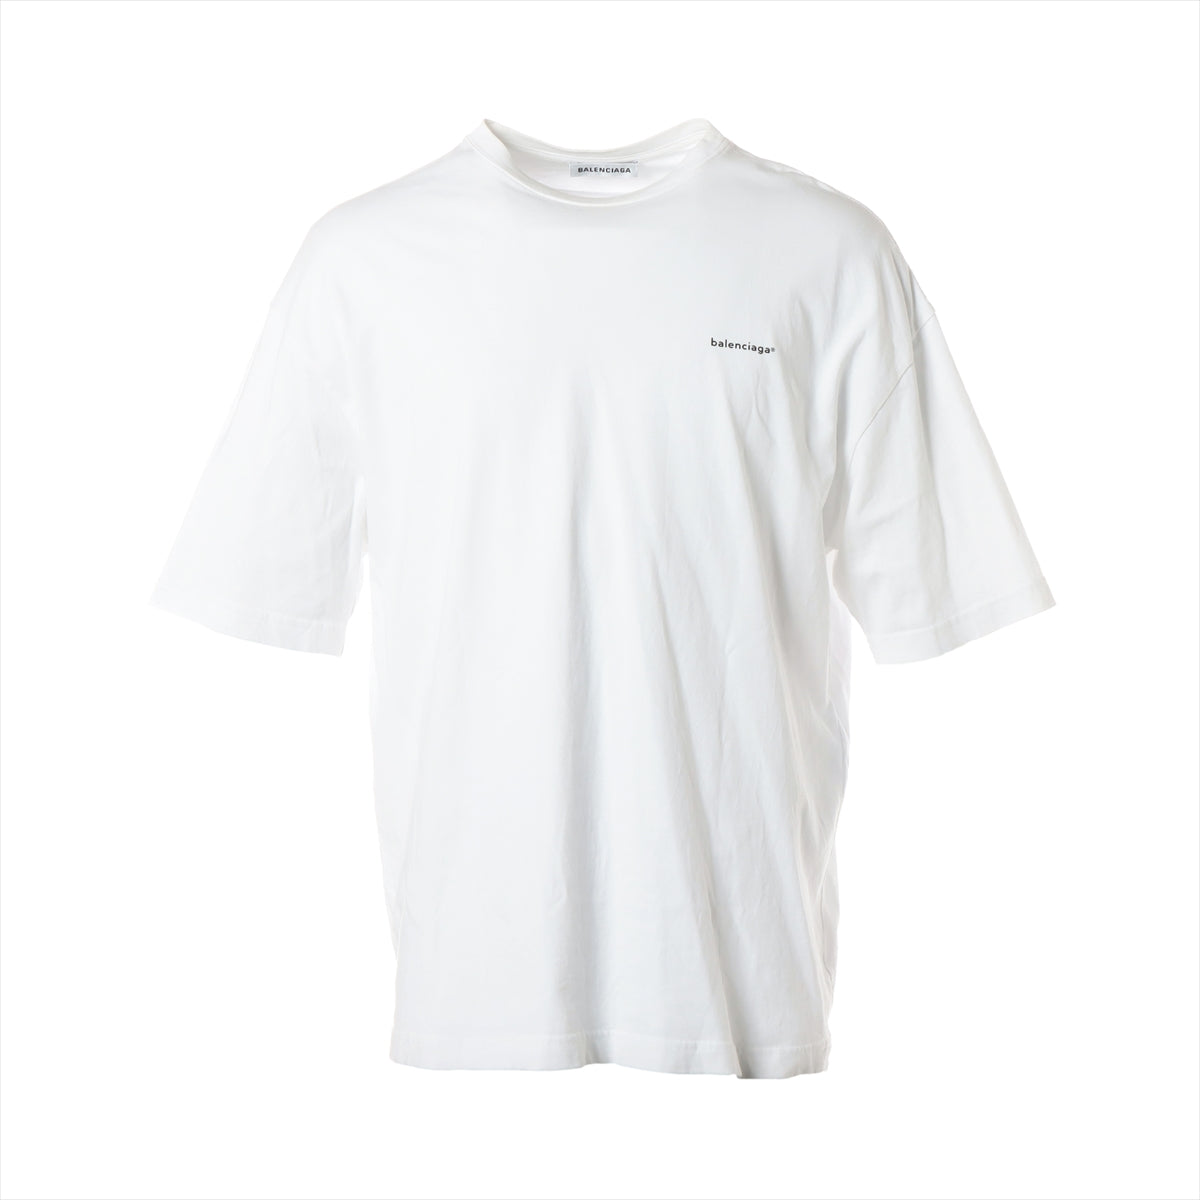 バレンシアガ 18年 コットン Tシャツ M メンズ ホワイト ロゴプリントオーバーサイズ クルーネック 556104